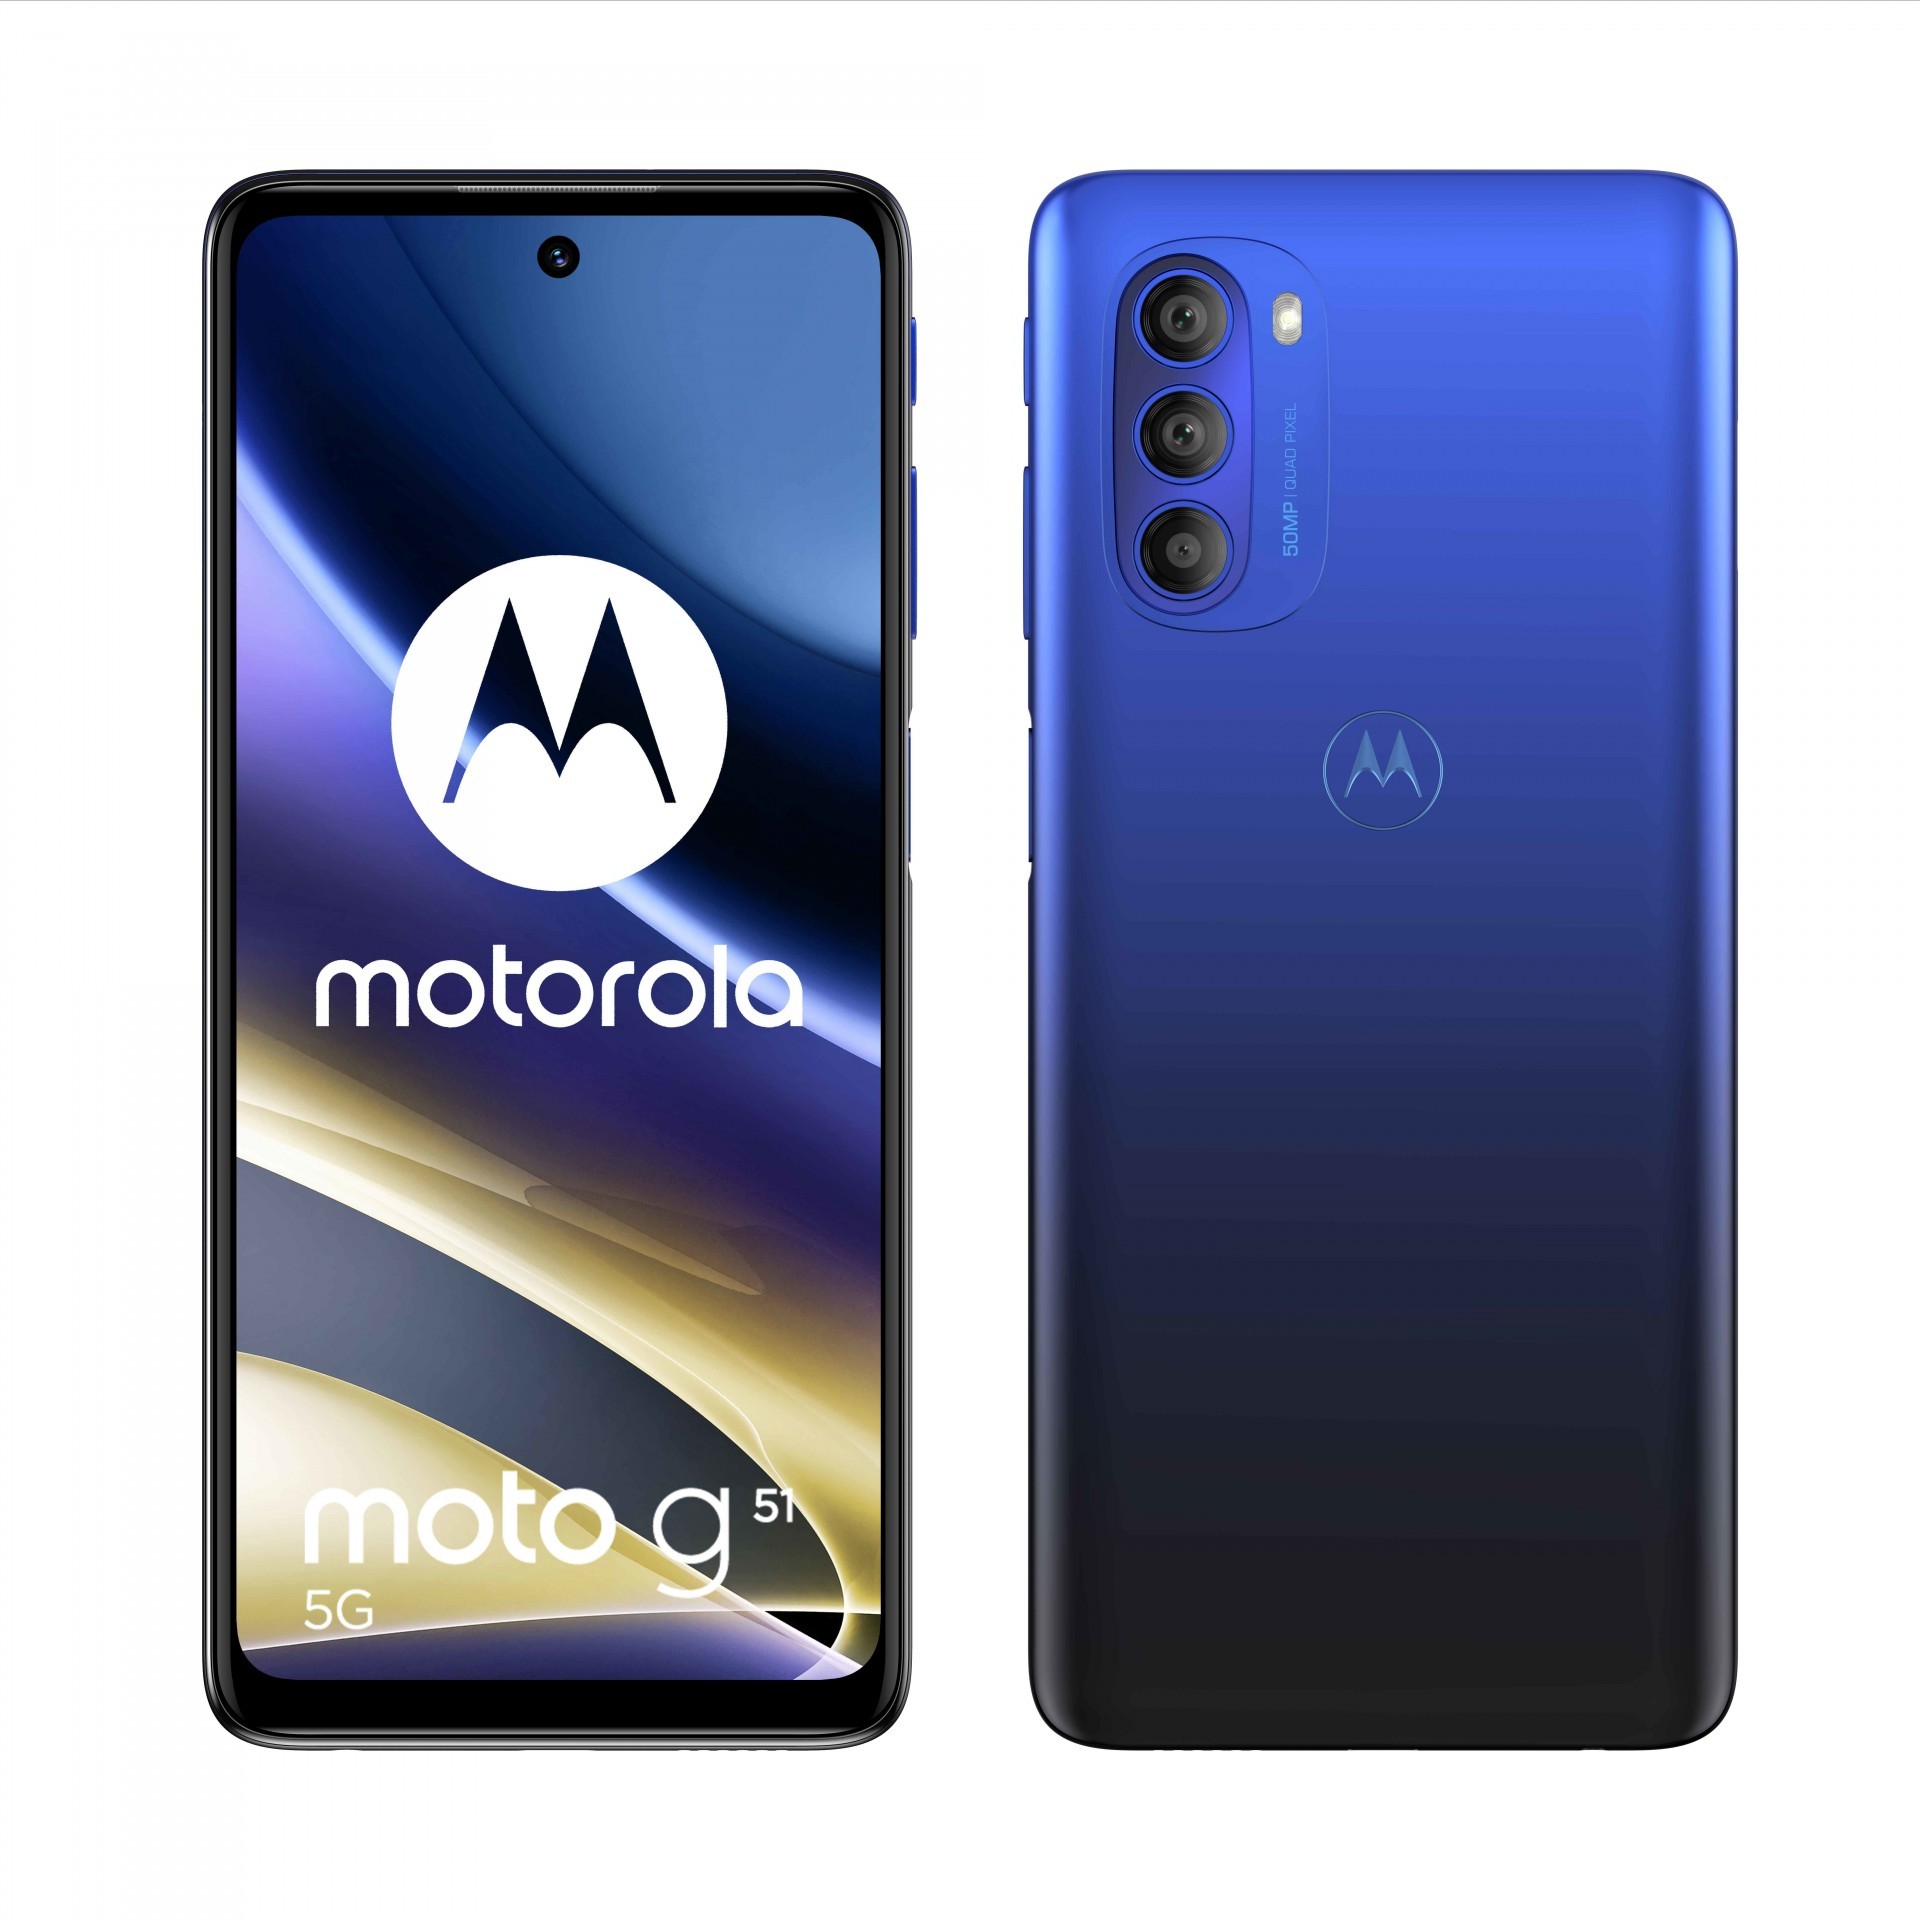 Motorola g 系列最新款 5G 手機 moto g51 5G 宣布 2 月 18 日發售